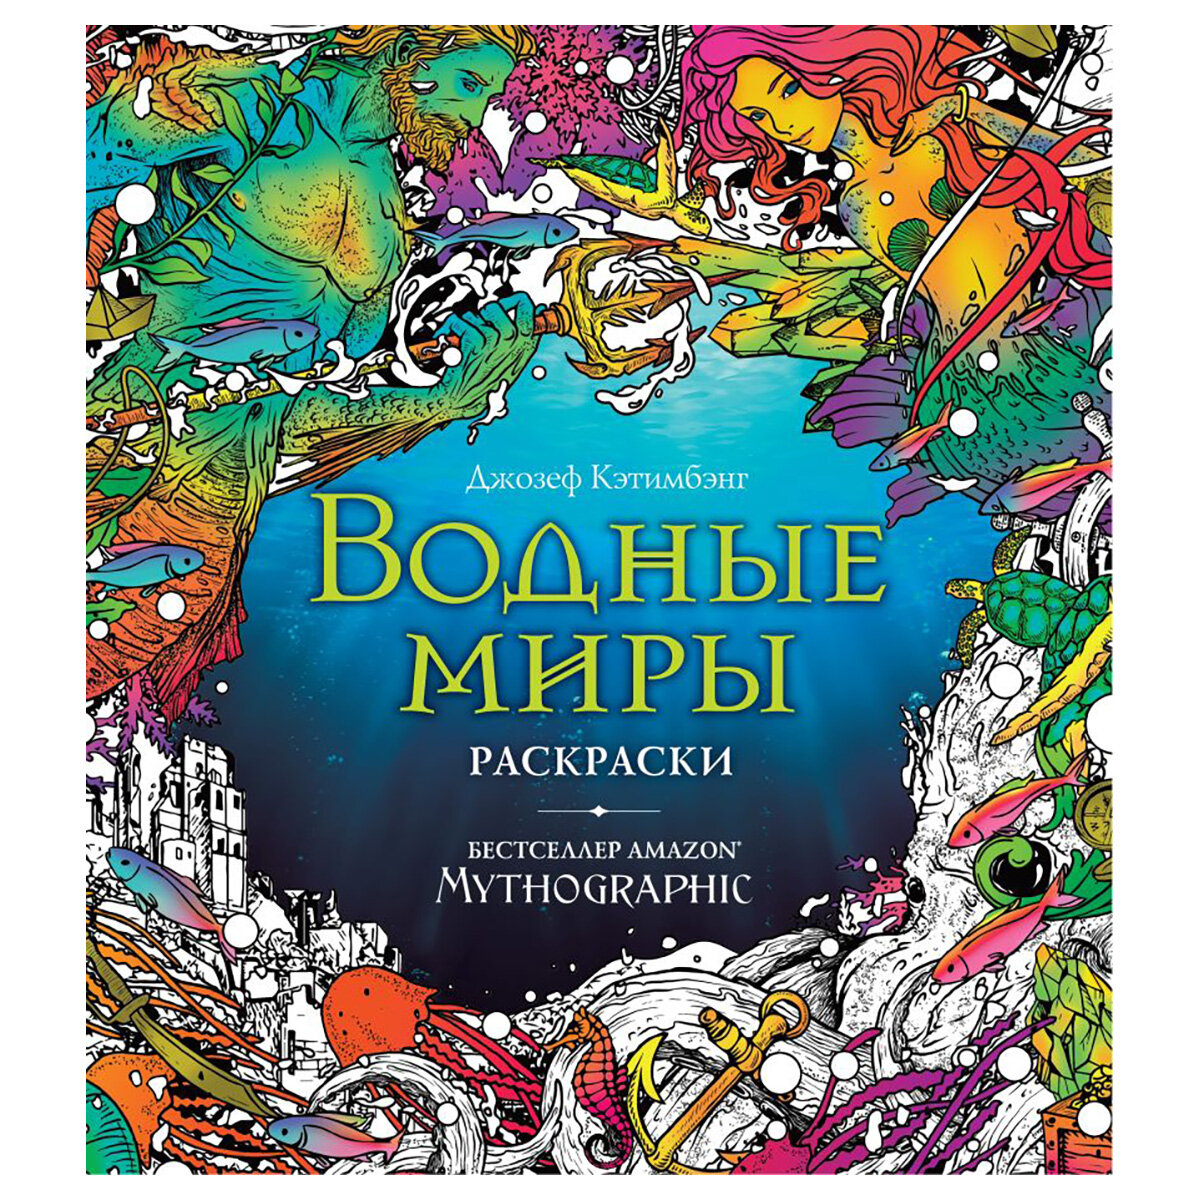 "Mythographic: Раскраски за гранью воображения" Водные миры, 1 шт. в заказе